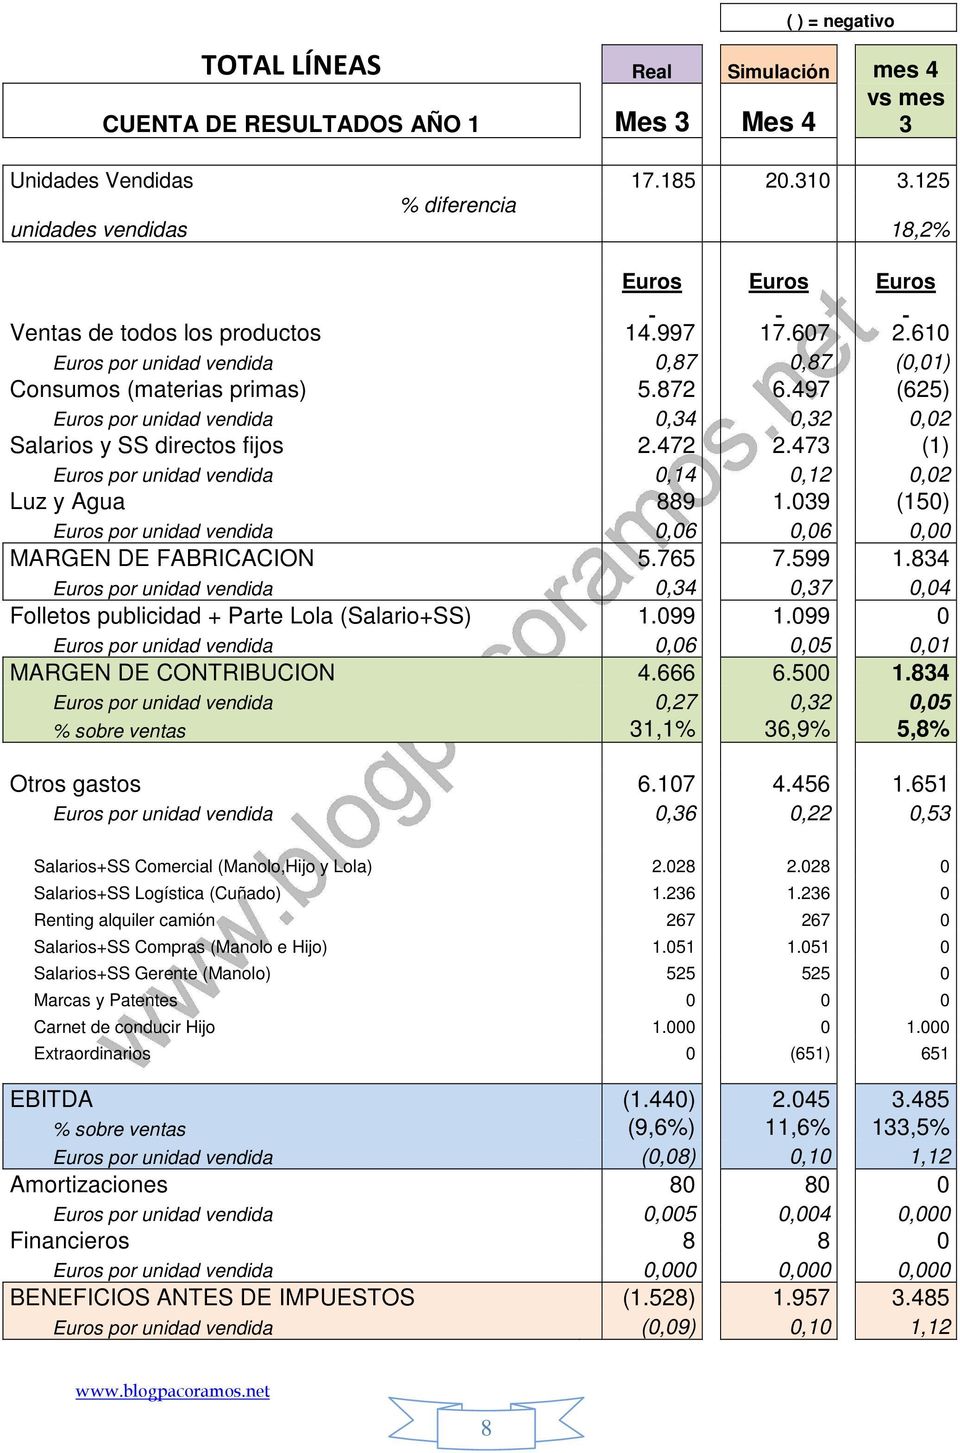 497 (625) Euros por unidad vendida 0,34 0,32 0,02 Salarios y SS directos fijos 2.472 2.473 (1) Euros por unidad vendida 0,14 0,12 0,02 Luz y Agua 889 1.